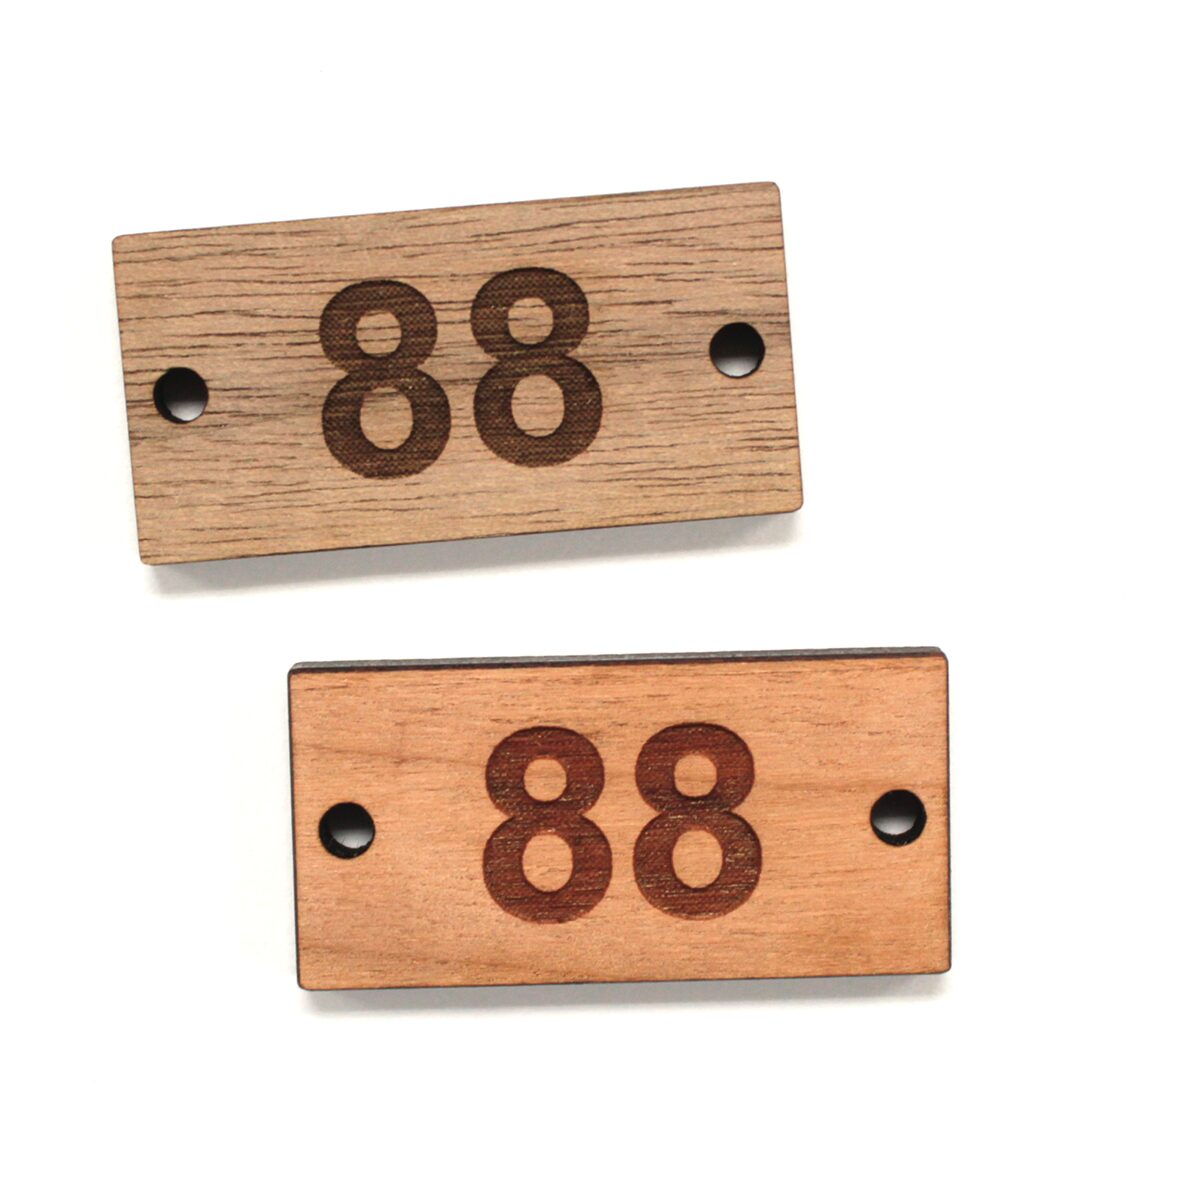 Chapas de madera con número y agujeros